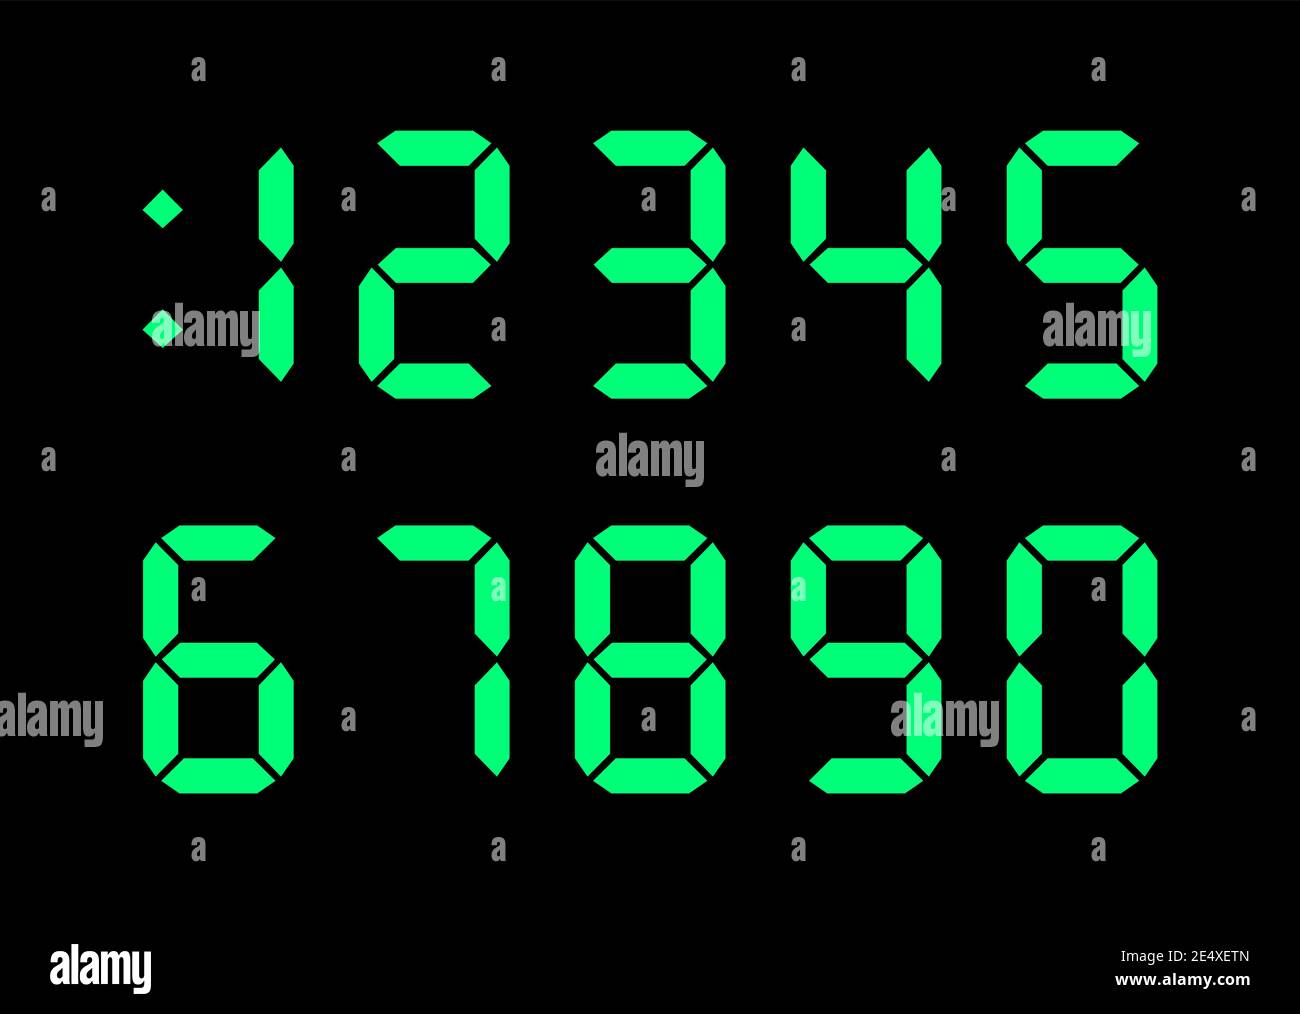 Font numerici digitali per display elettronico dell'orologio, calcolatrice, contatore. Colore verde su sfondo nero. Immagine vettoriale dal design piatto senza royalty. Illustrazione Vettoriale